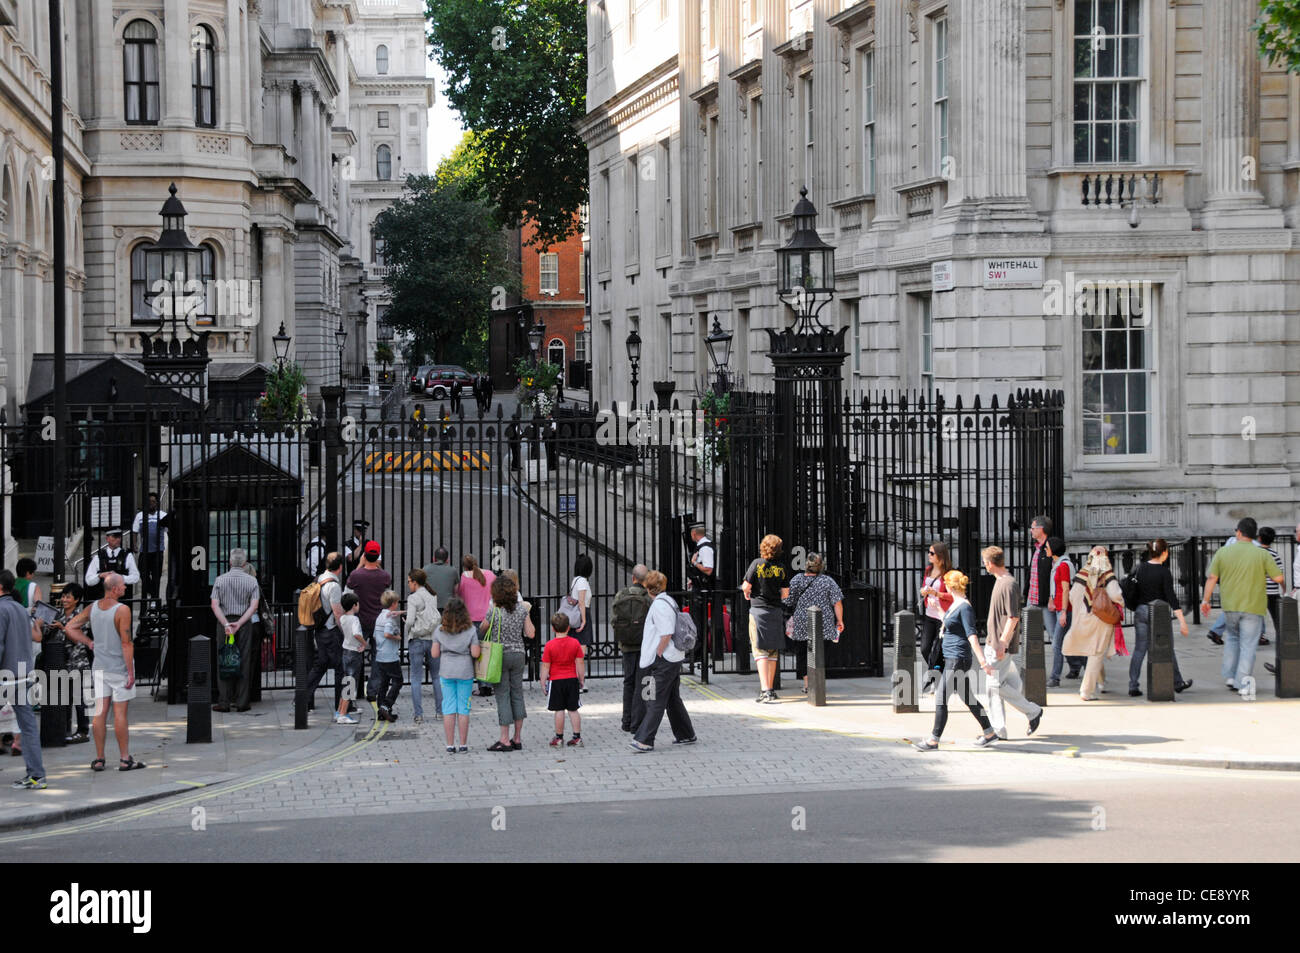 Touristen auf Gehwegen vor der Downing Street vor Stahlsicherheitstoren, kontrolliert von bewaffneten Metropolitan Police Officers in London England Stockfoto